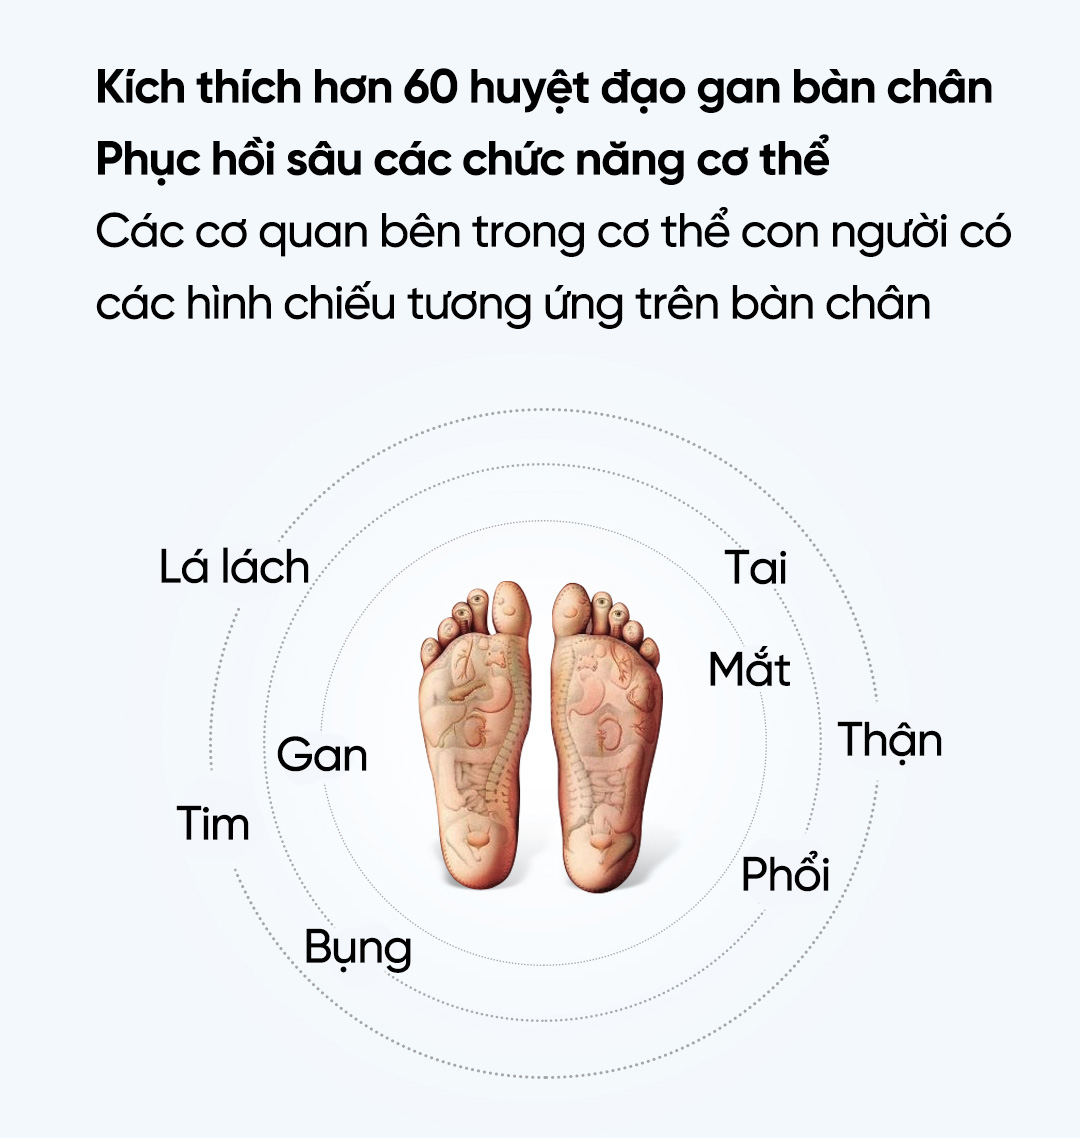 Máy Massage Chân Bấm Huyệt Xiaomi XGEEK F3 Hàng Chính Hãng Bảo Hành 6 Tháng  | Lazada.vn